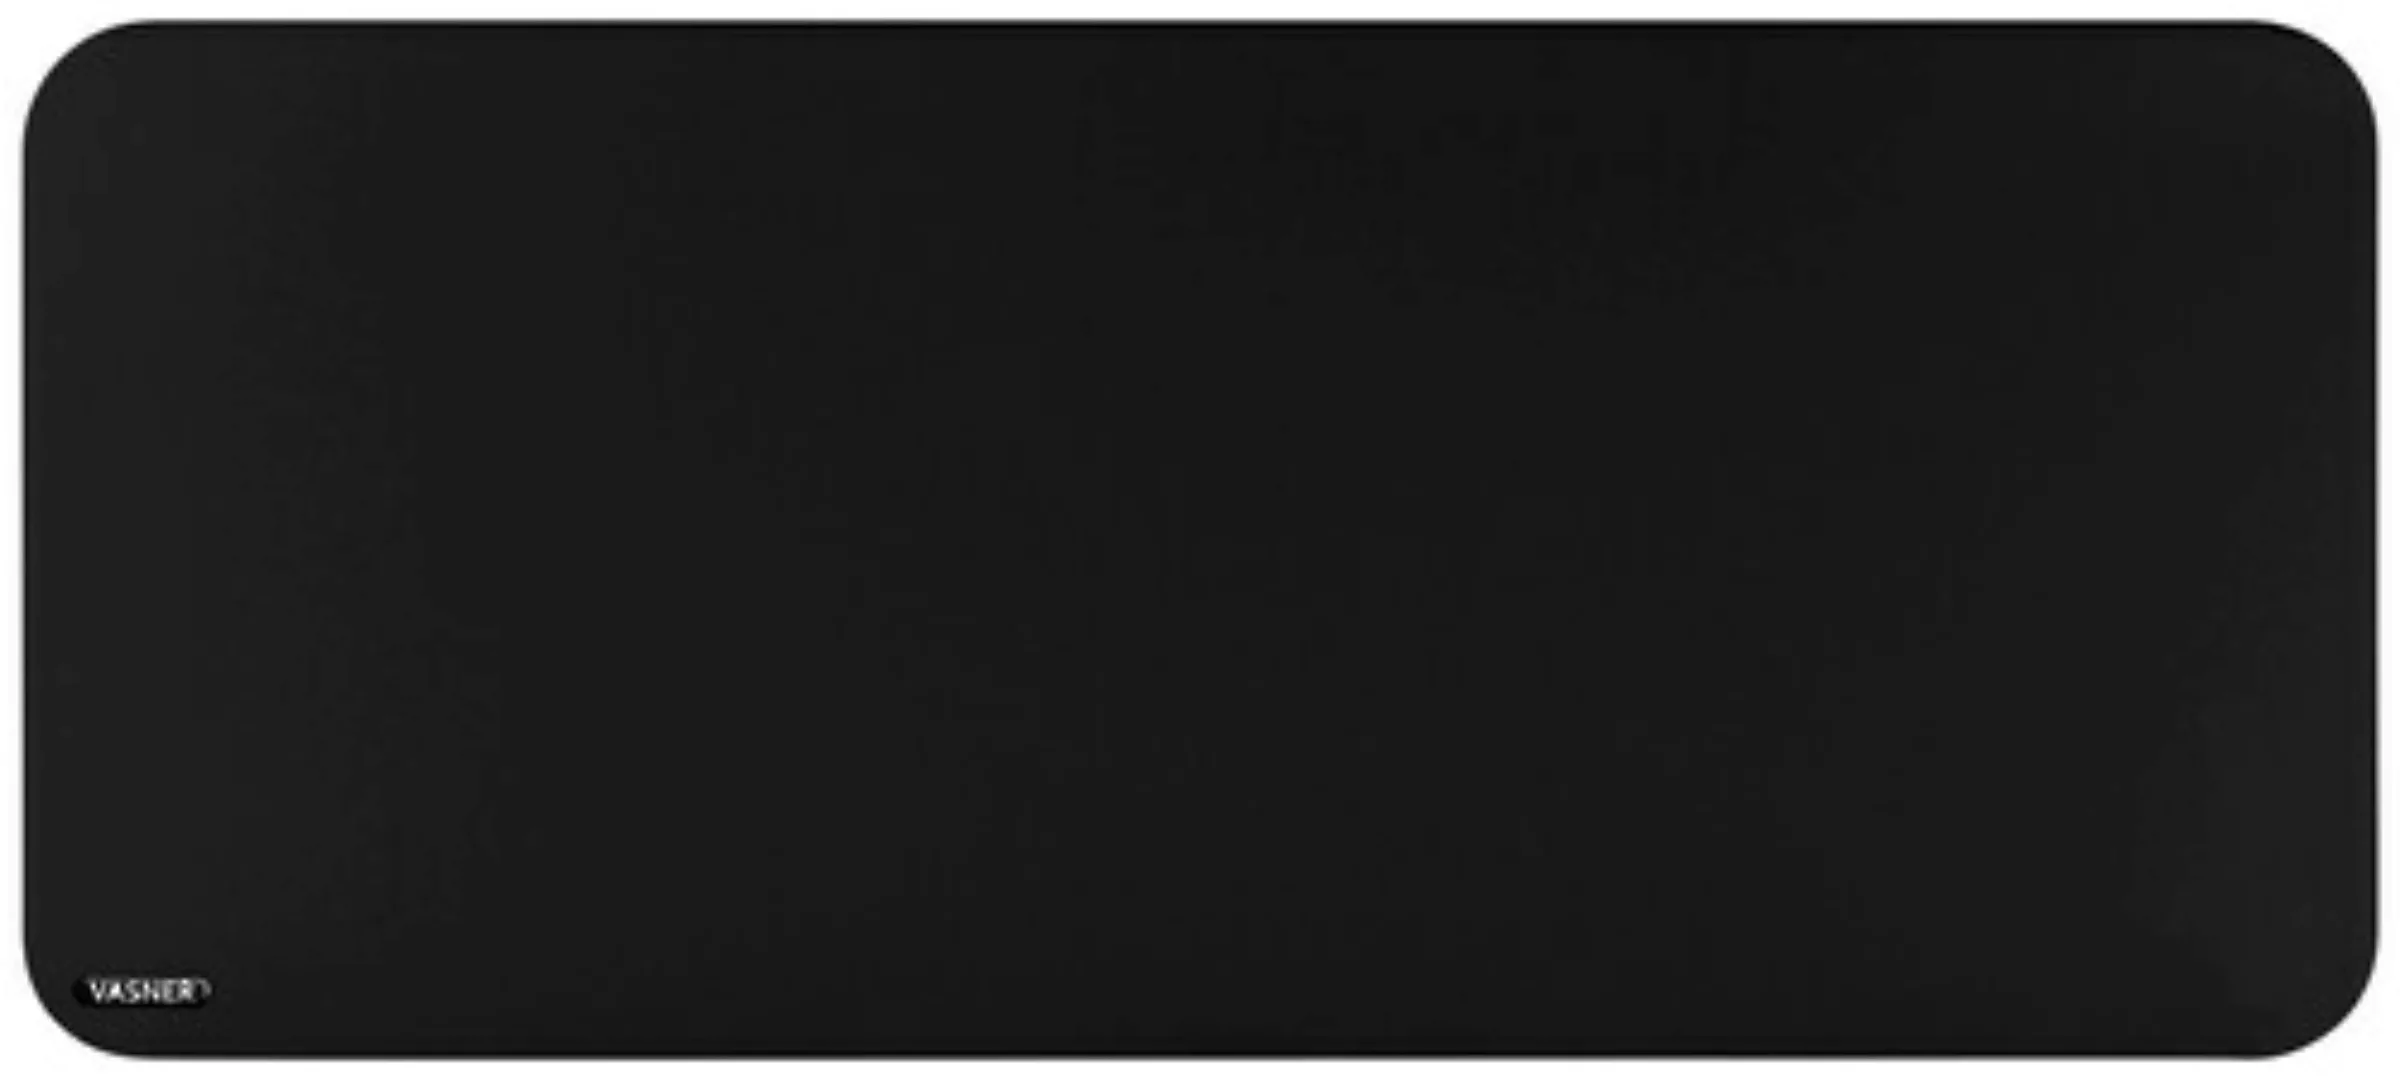 Vasner Infrarotheizung Citara T Plus Tafelheizung 1100 W 60 cm x 140 cm günstig online kaufen